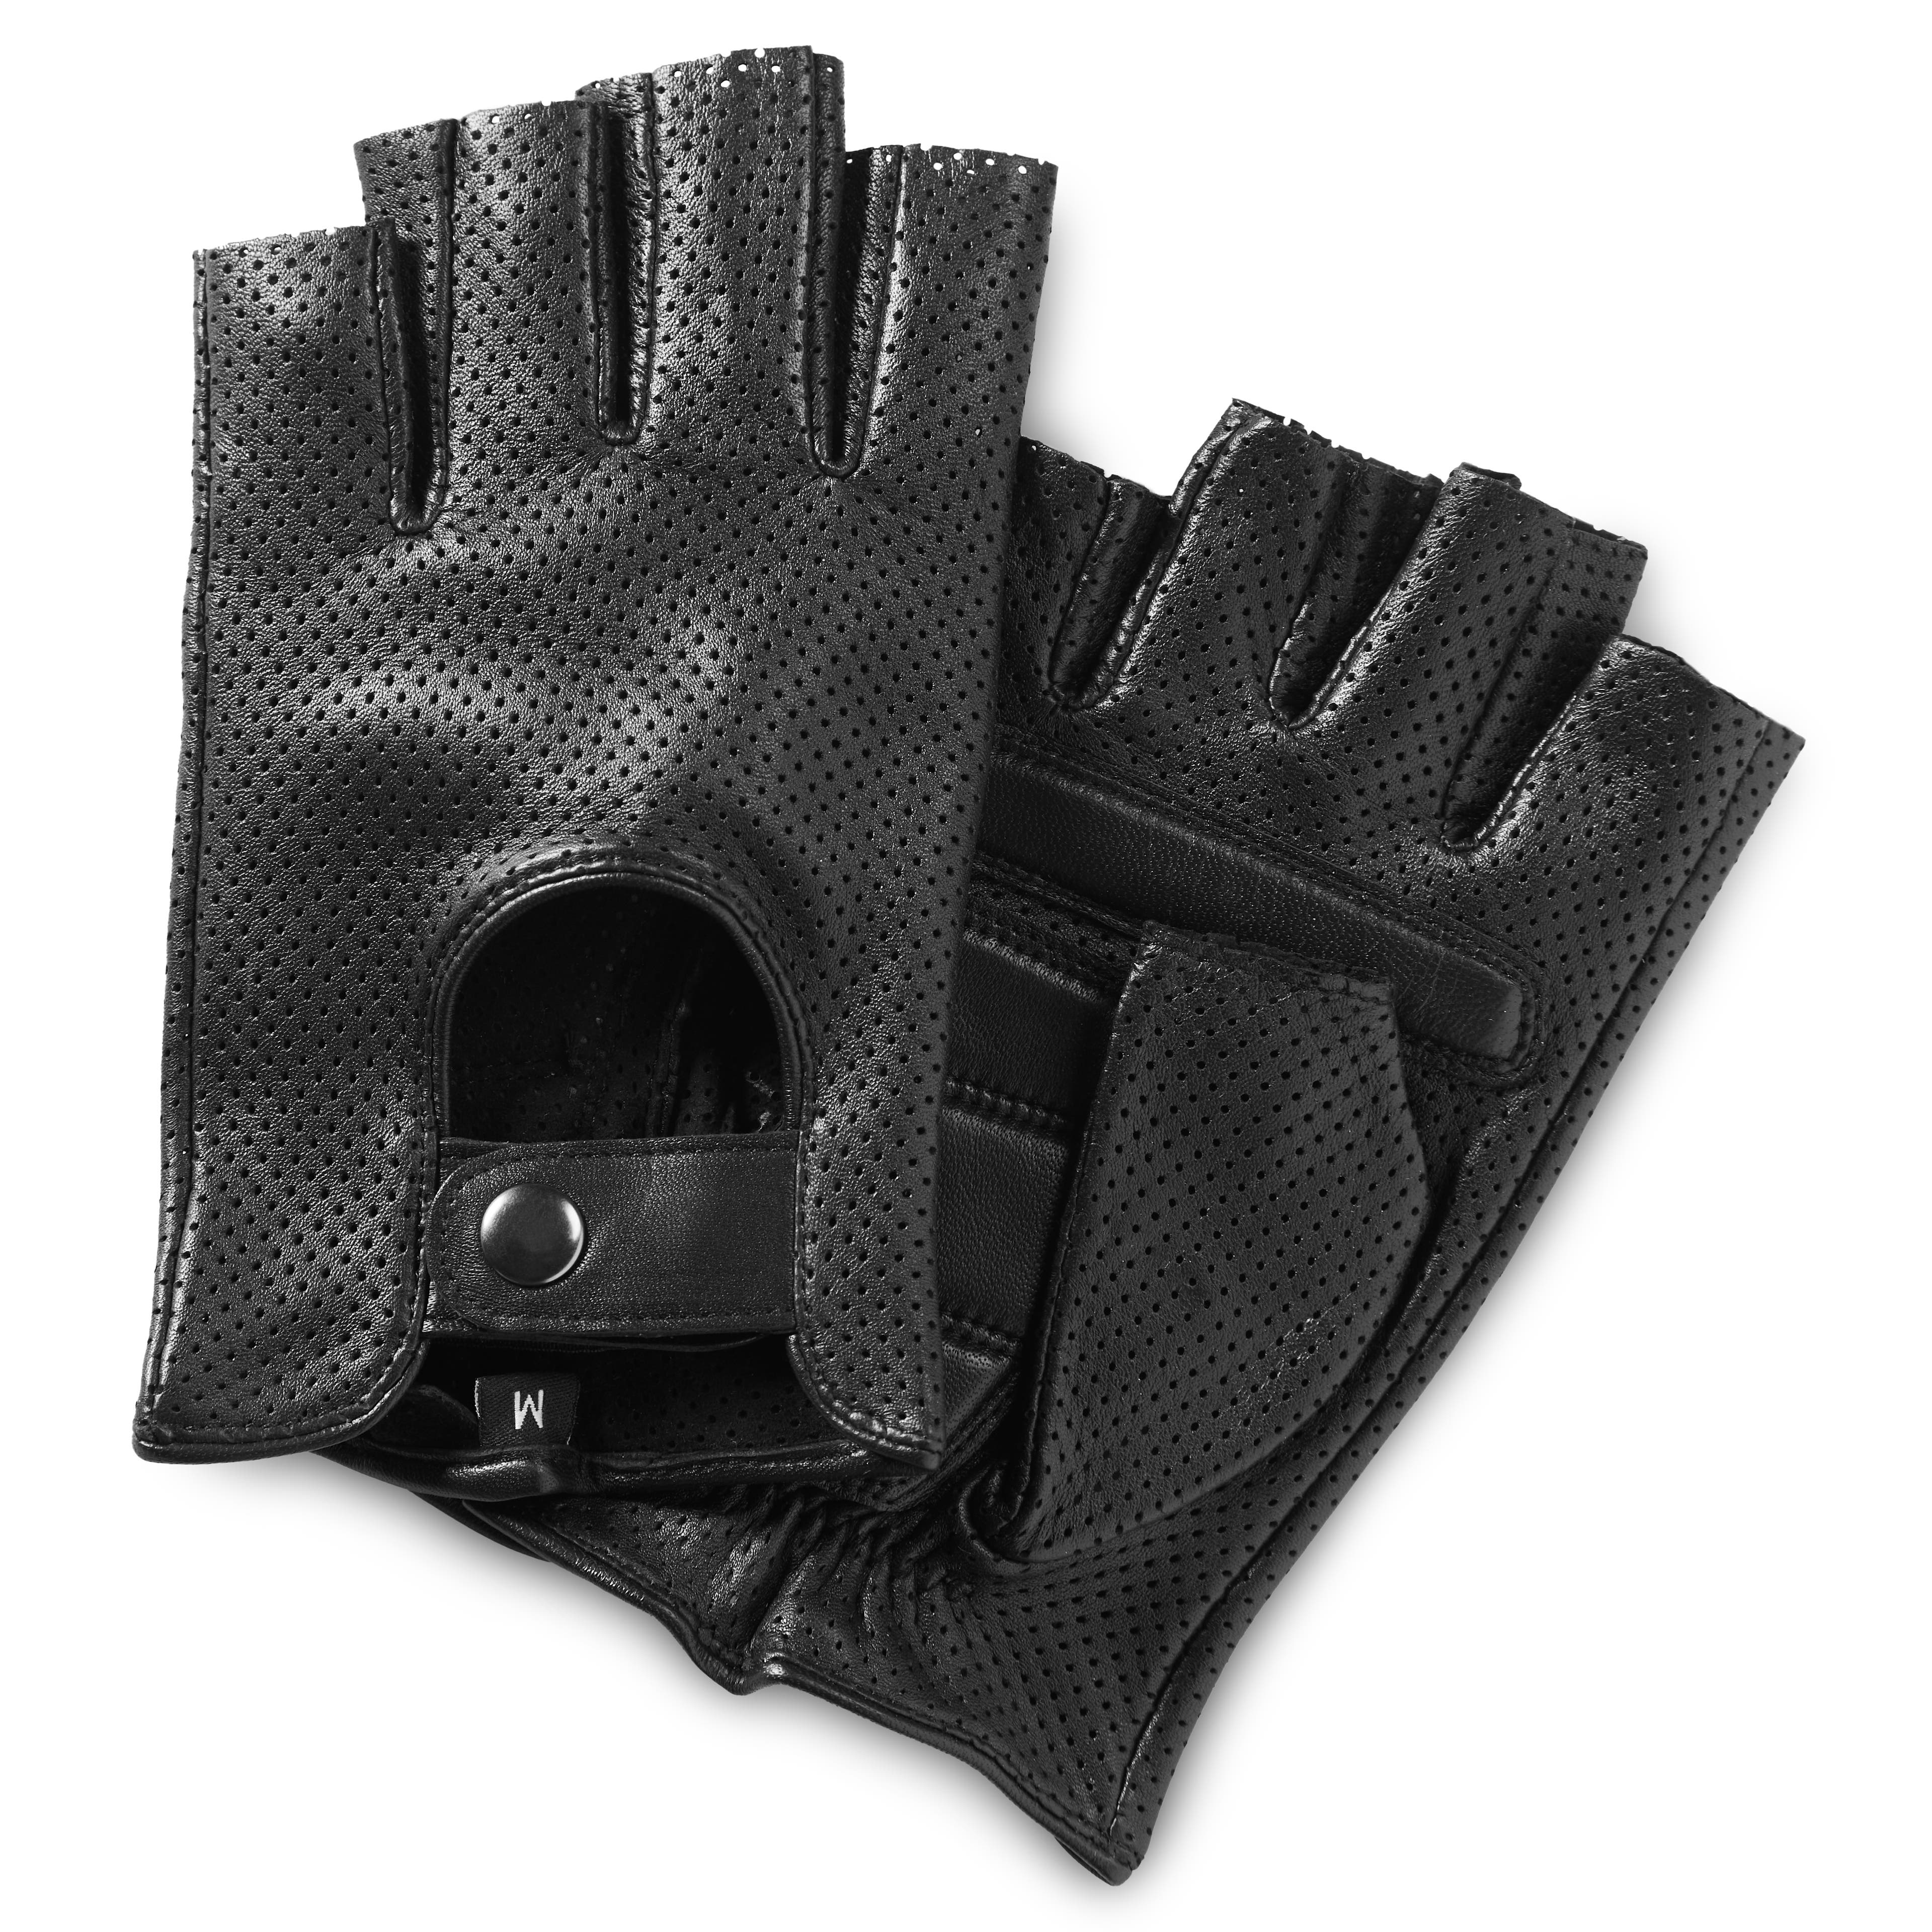 Black Sheepskin Leather Fingerless Driving Gloves